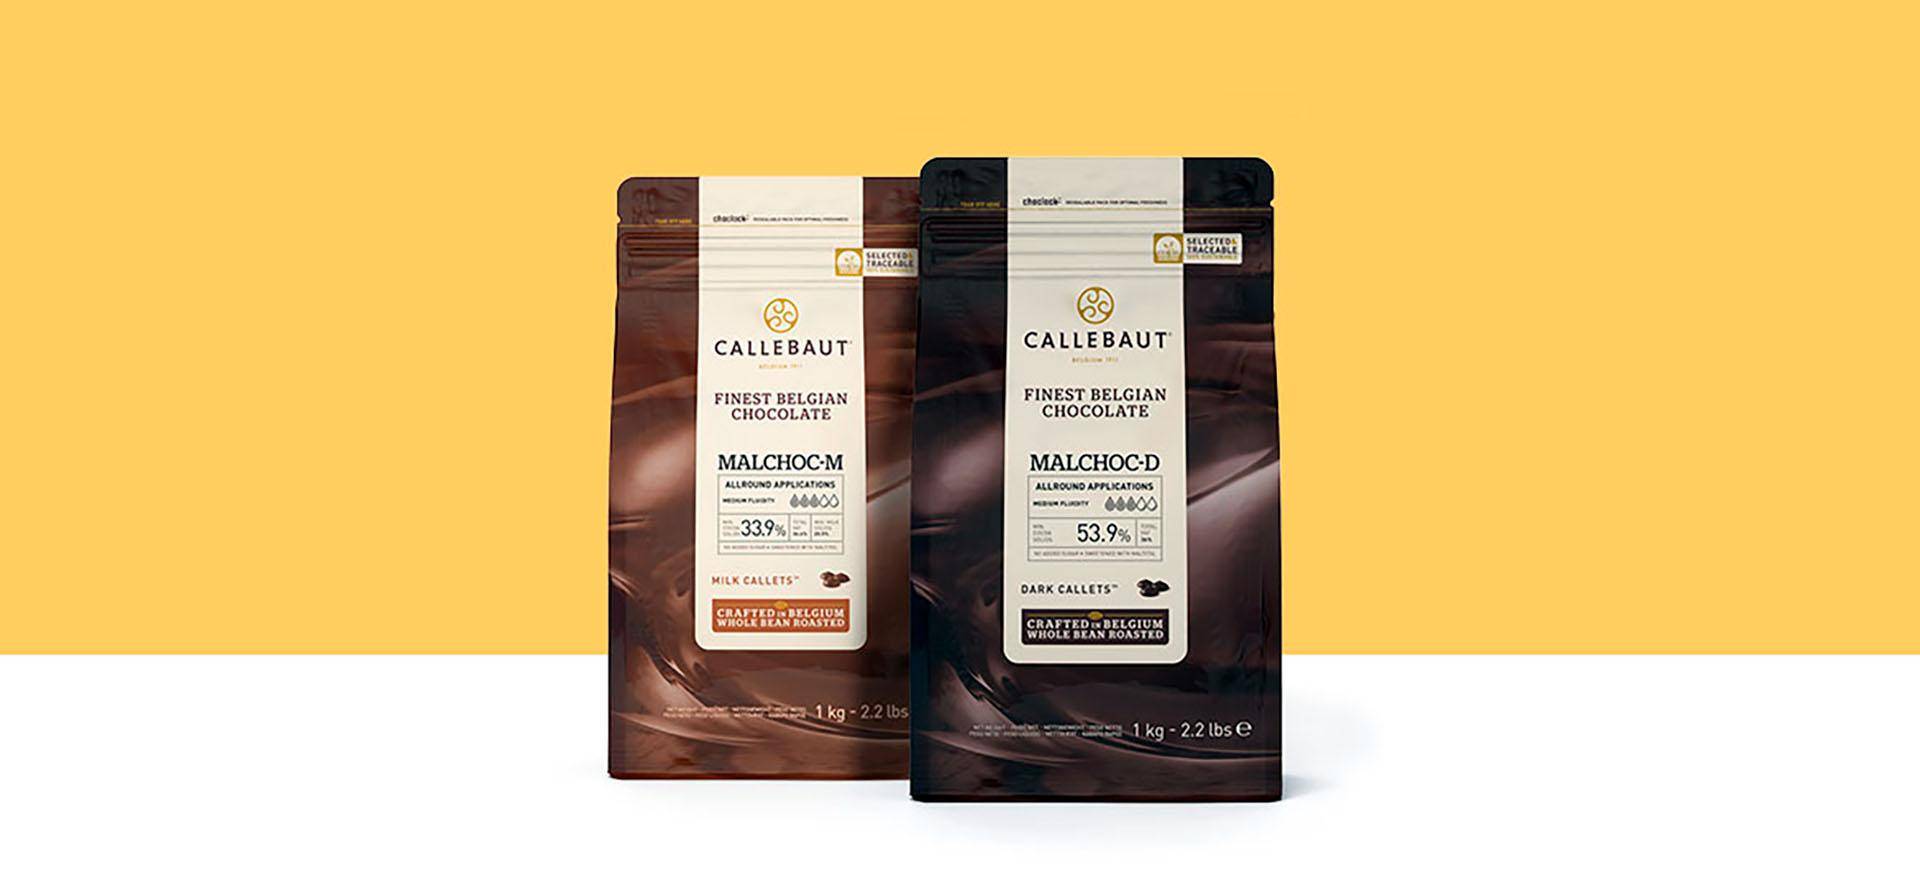 Callebaut Malchoc